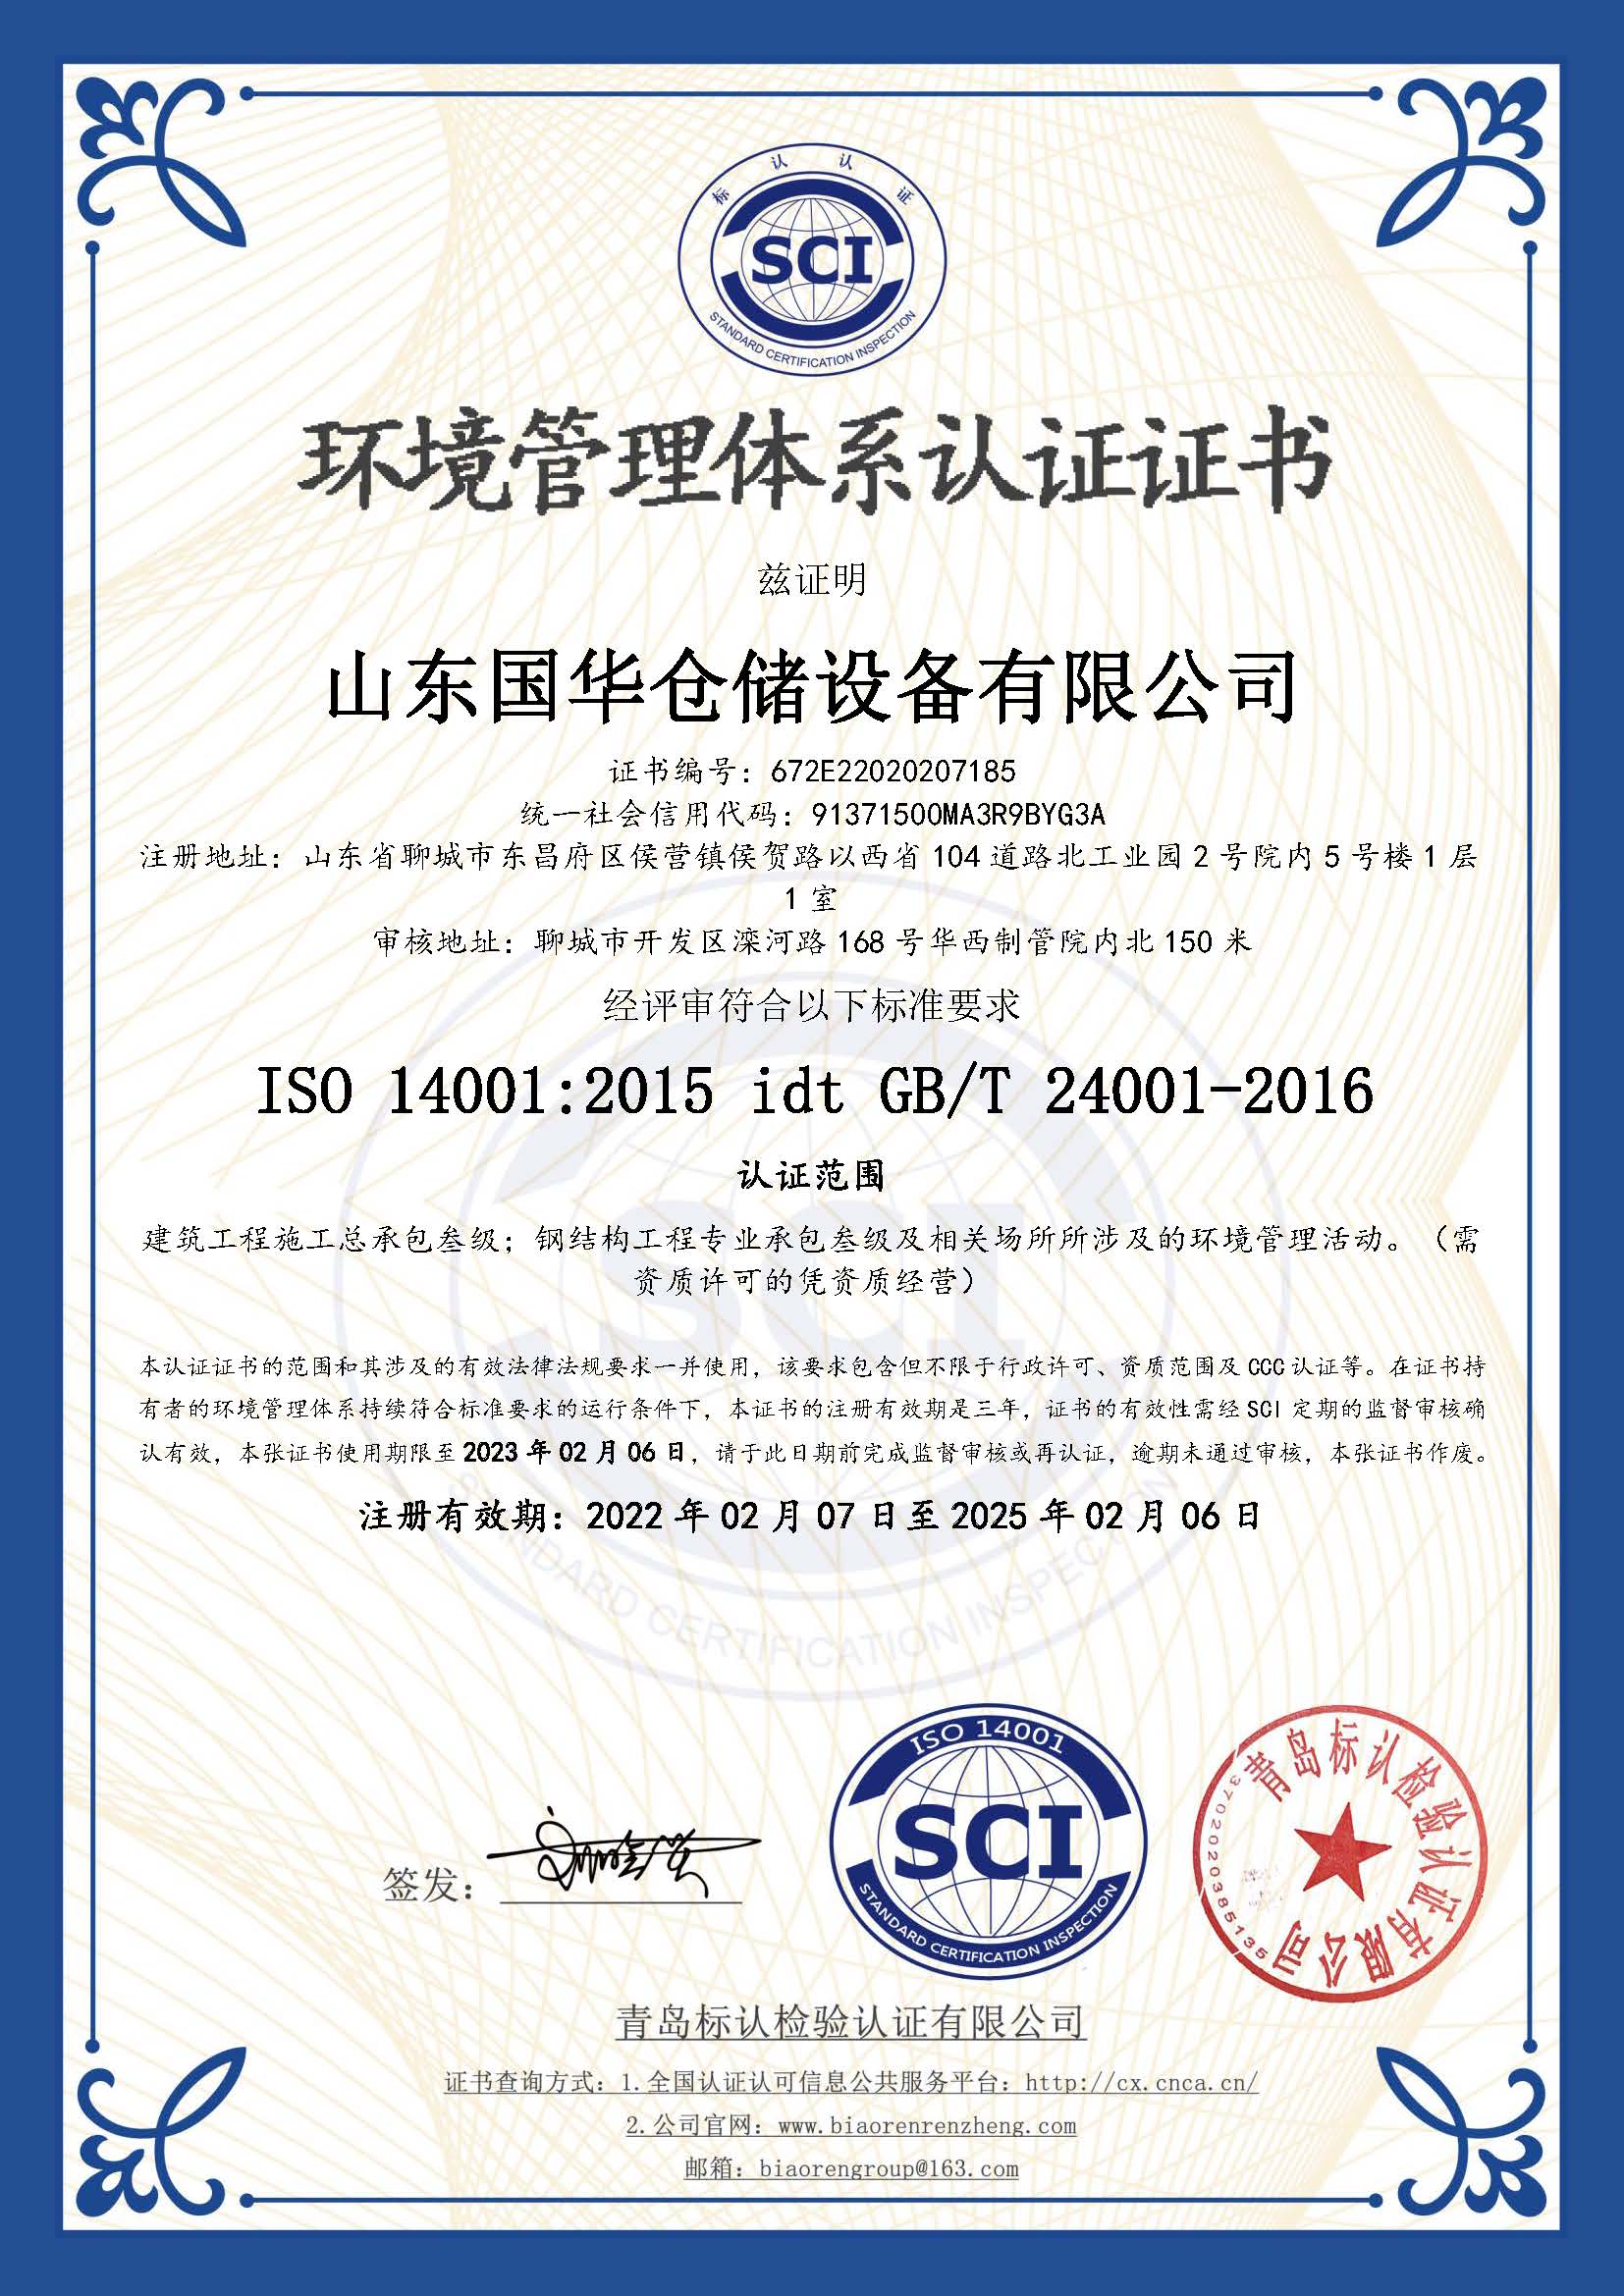 锡林郭勒钢板仓环境管理体系认证证书